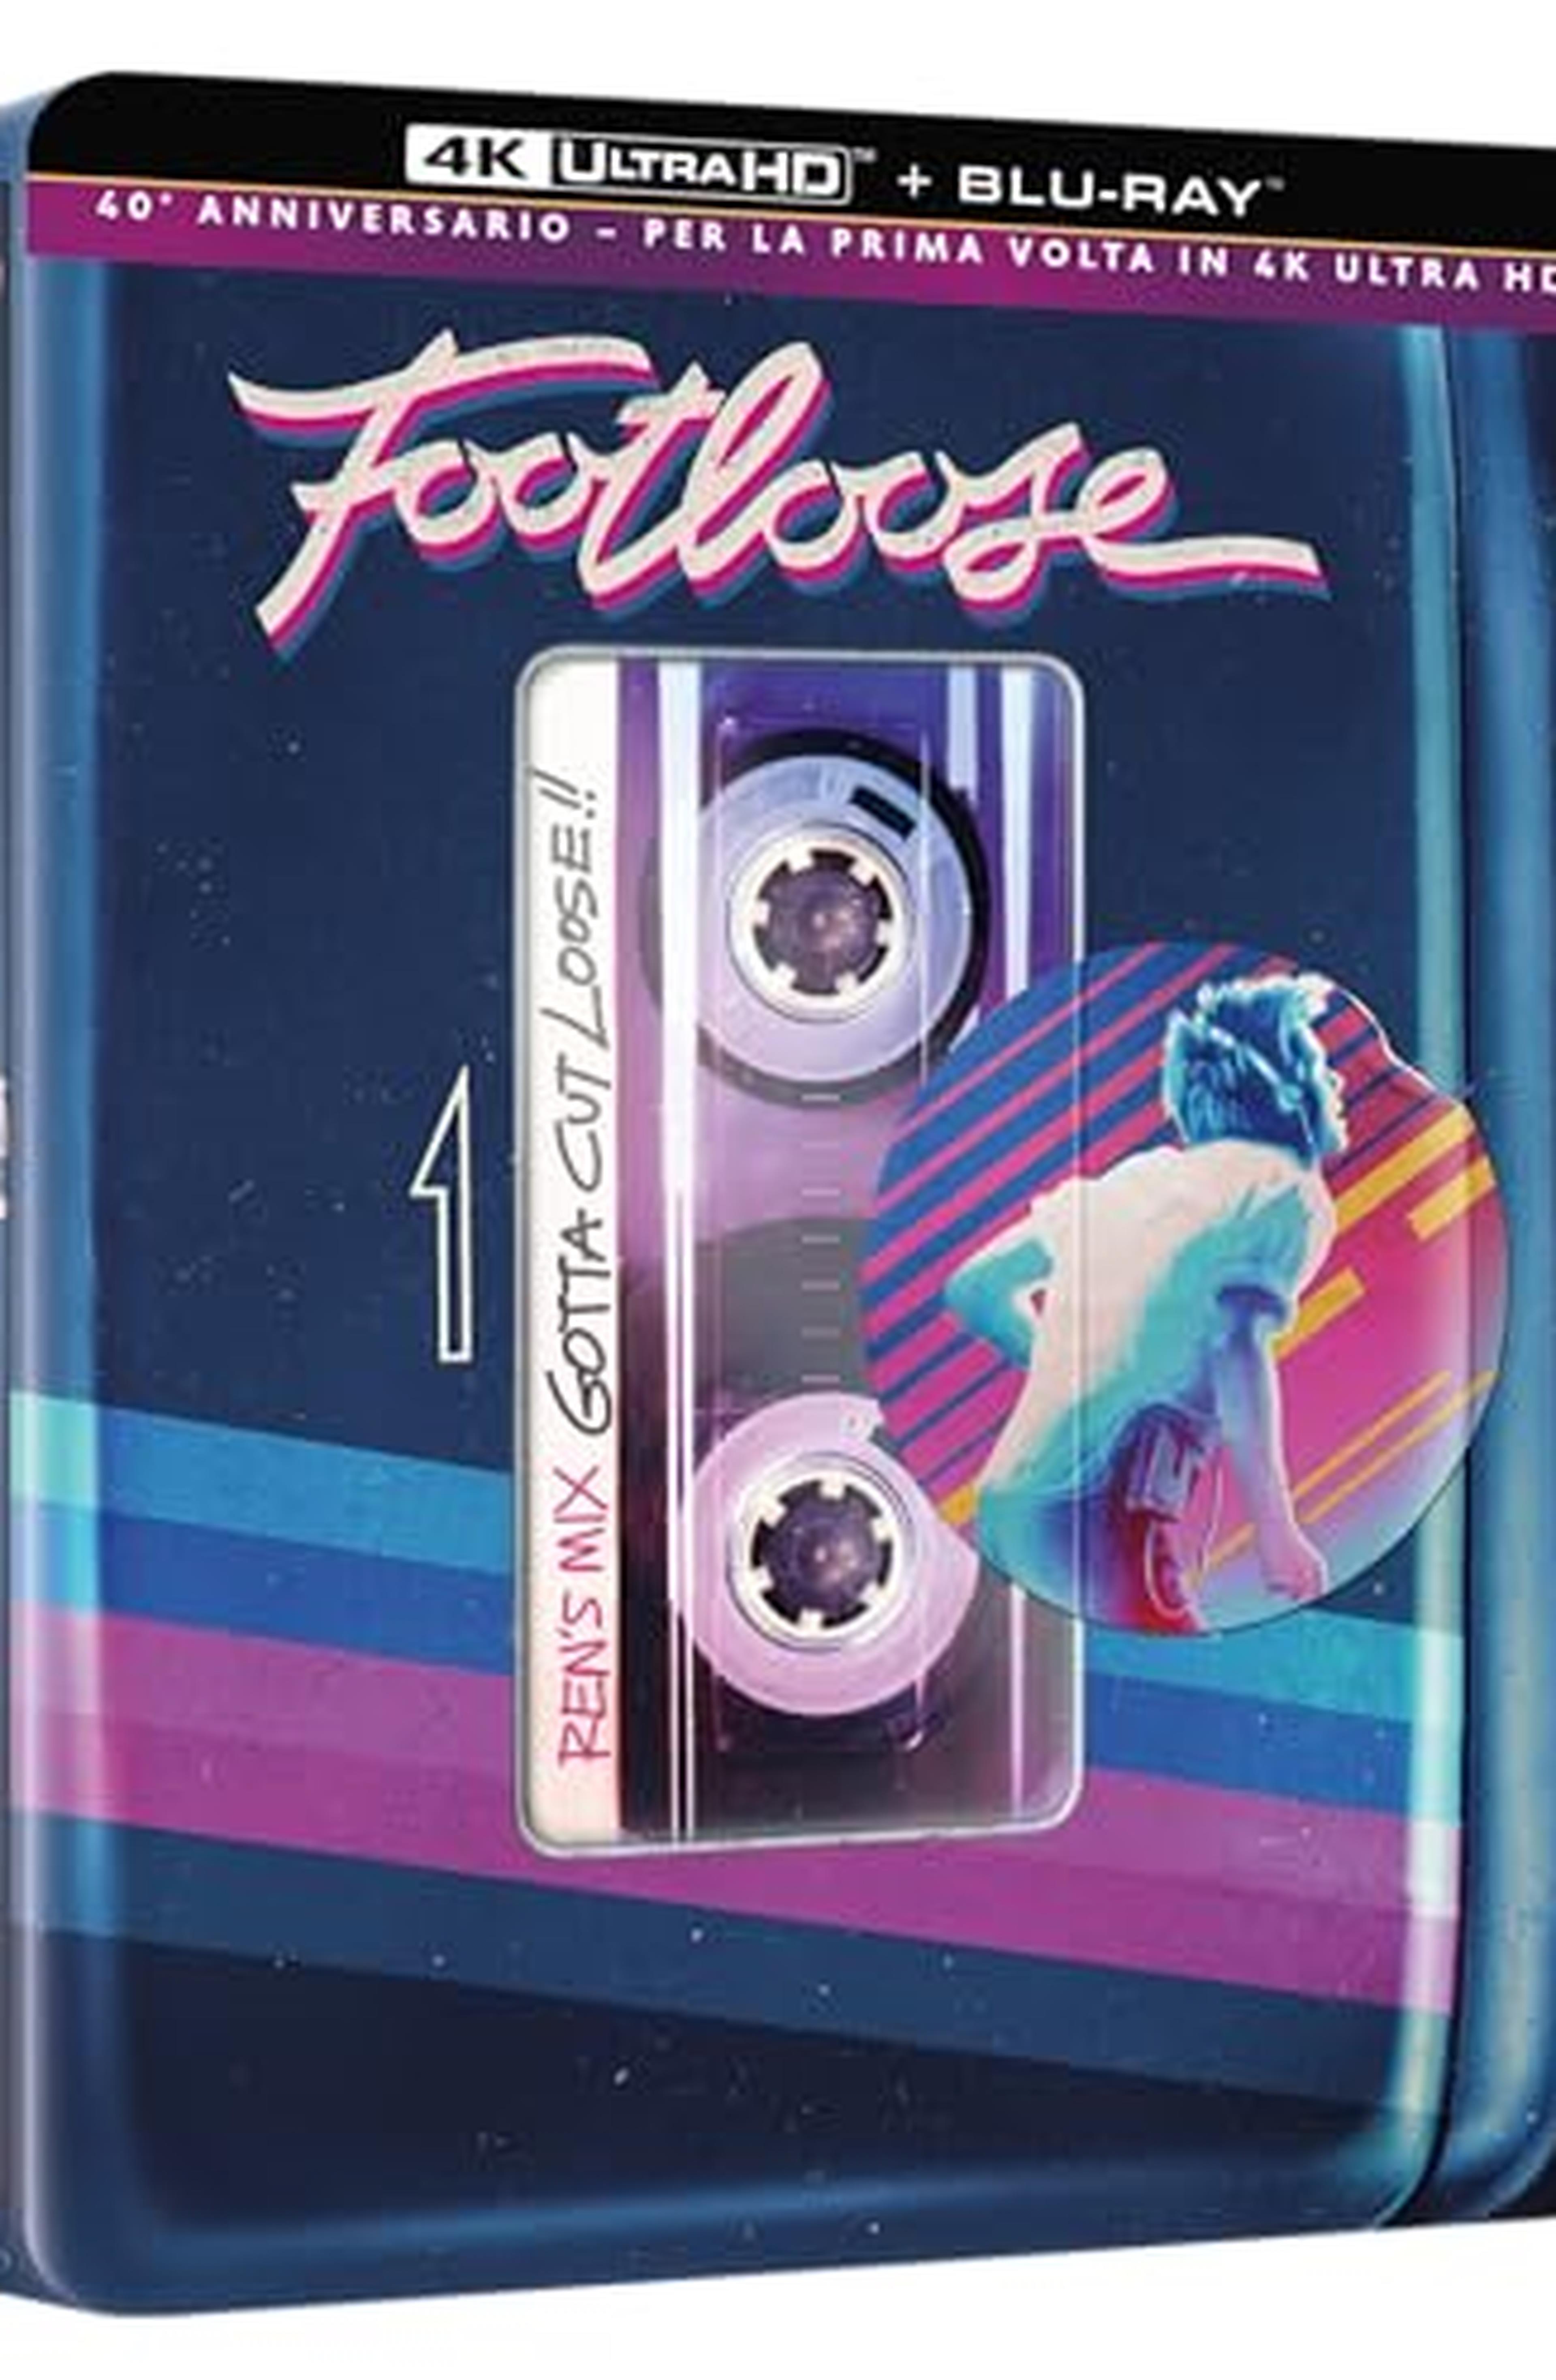 Footloose (Steelbook 4K UHD + Blu-ray)